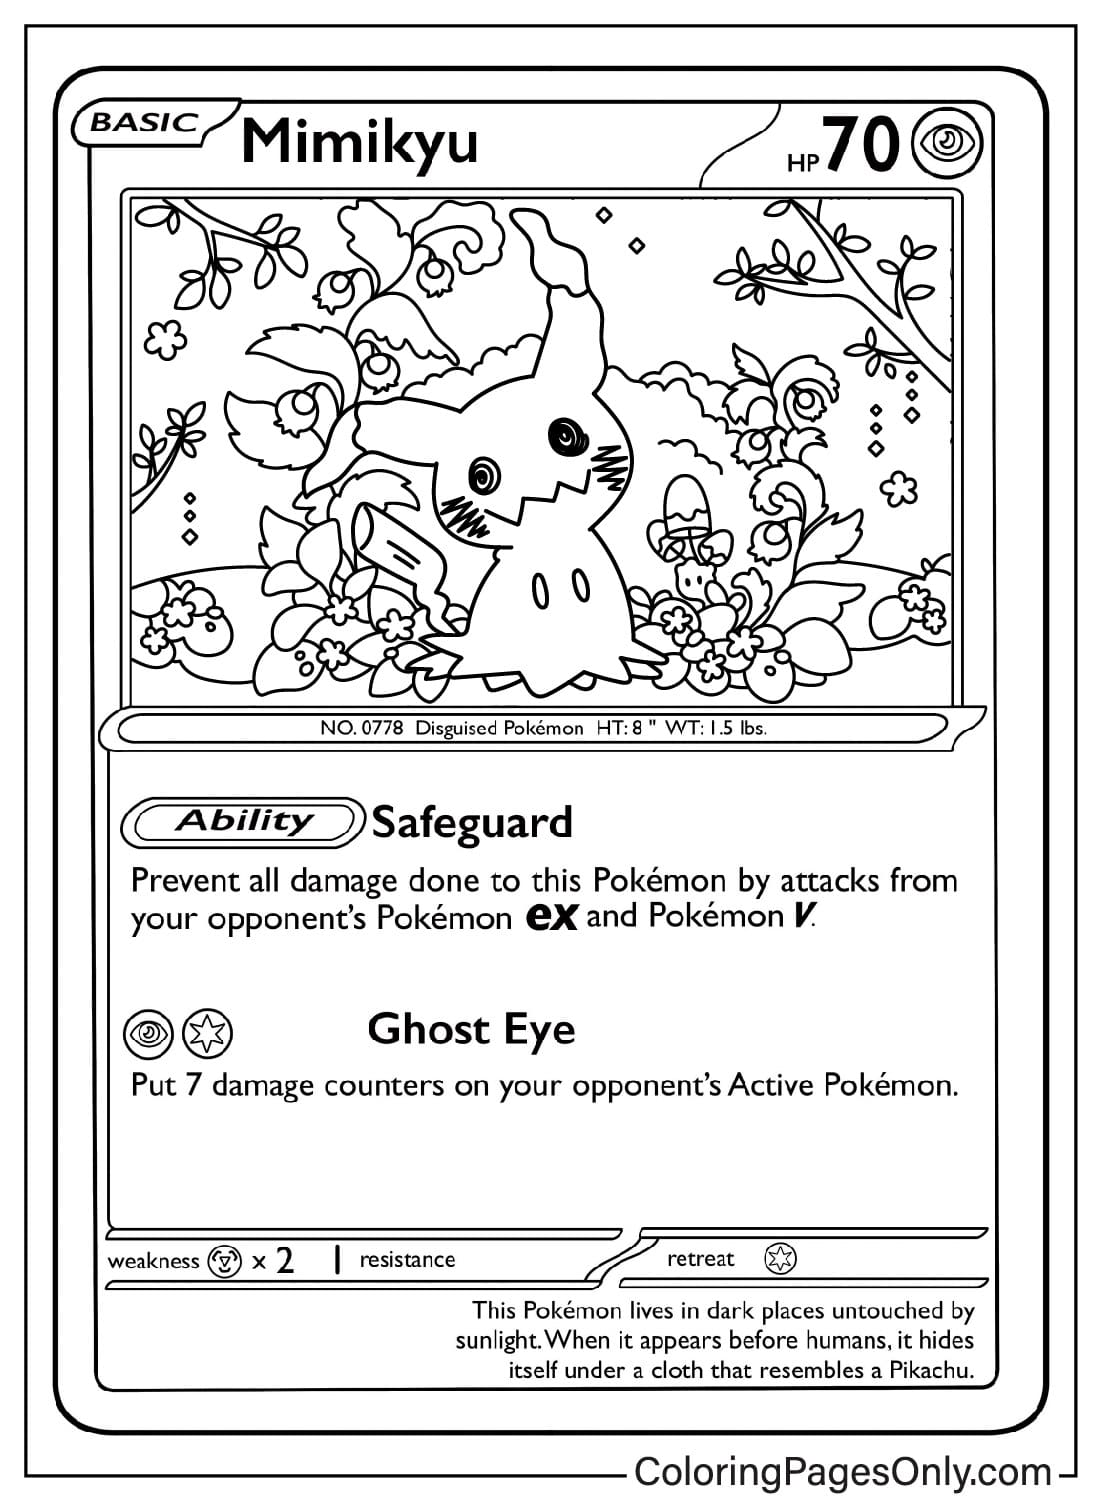 Карта покемонов Мимикью из Pokemon Card